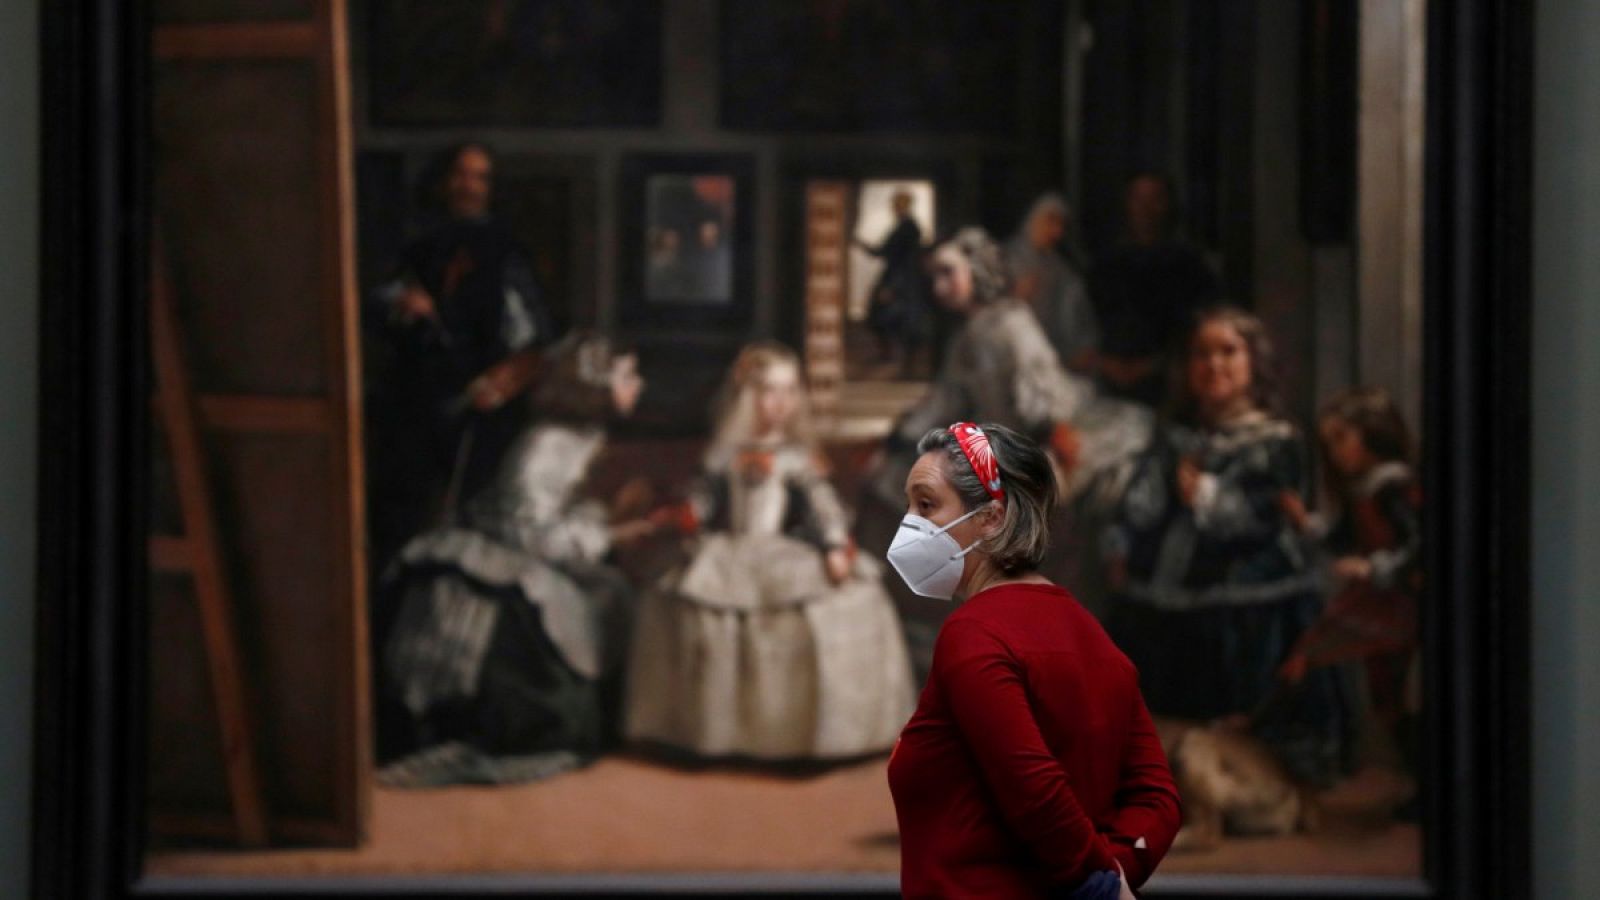 Coronavirus | Los cuadros de Velázquez vistos desde la perspectiva del confinamiento y la desescalada